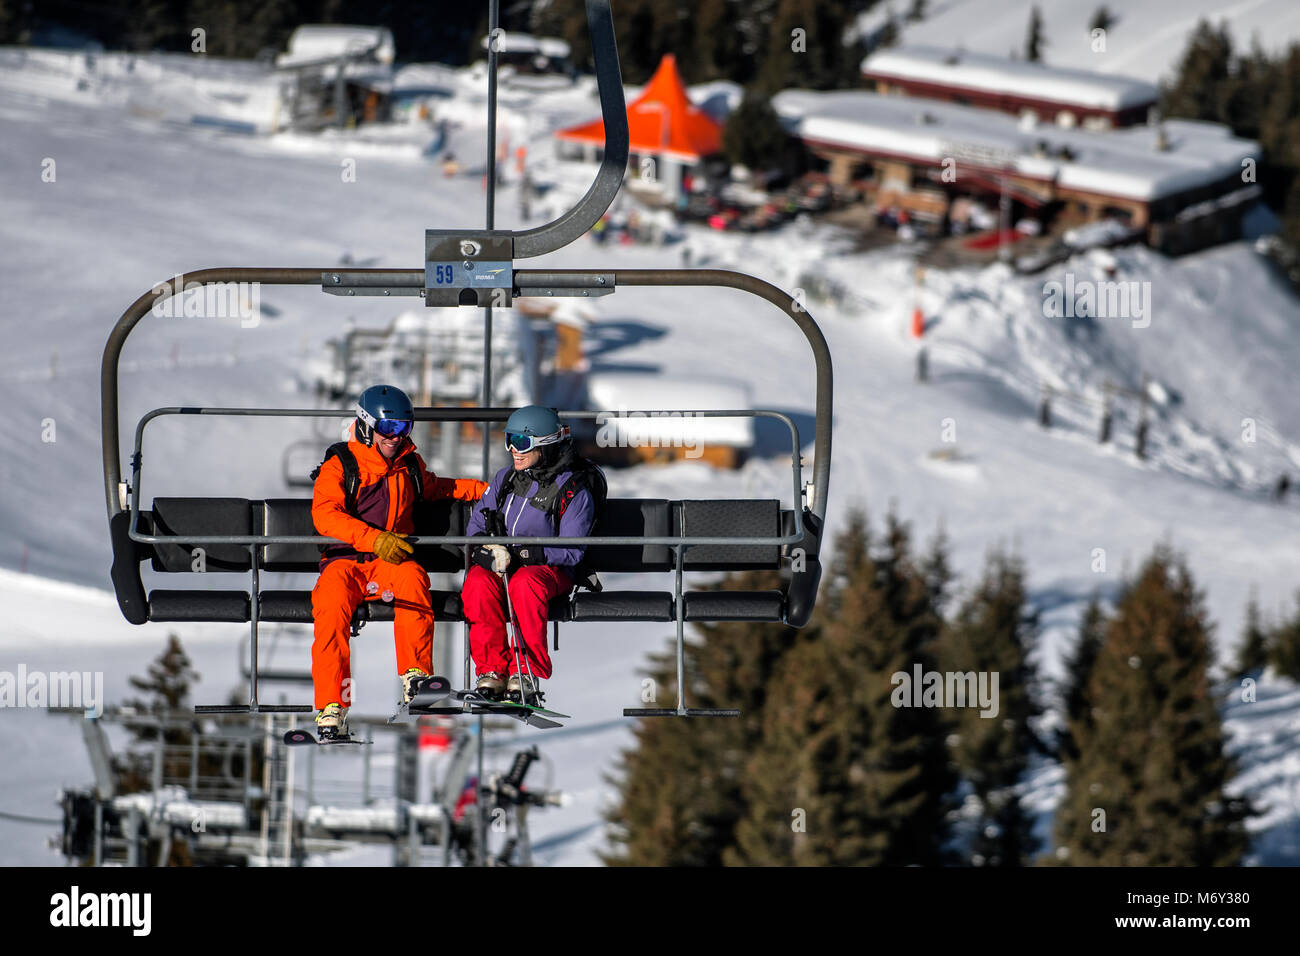 Un moniteur de ski homme parle à une femme sur un télésiège dans la station alpine de Courchevel. Banque D'Images